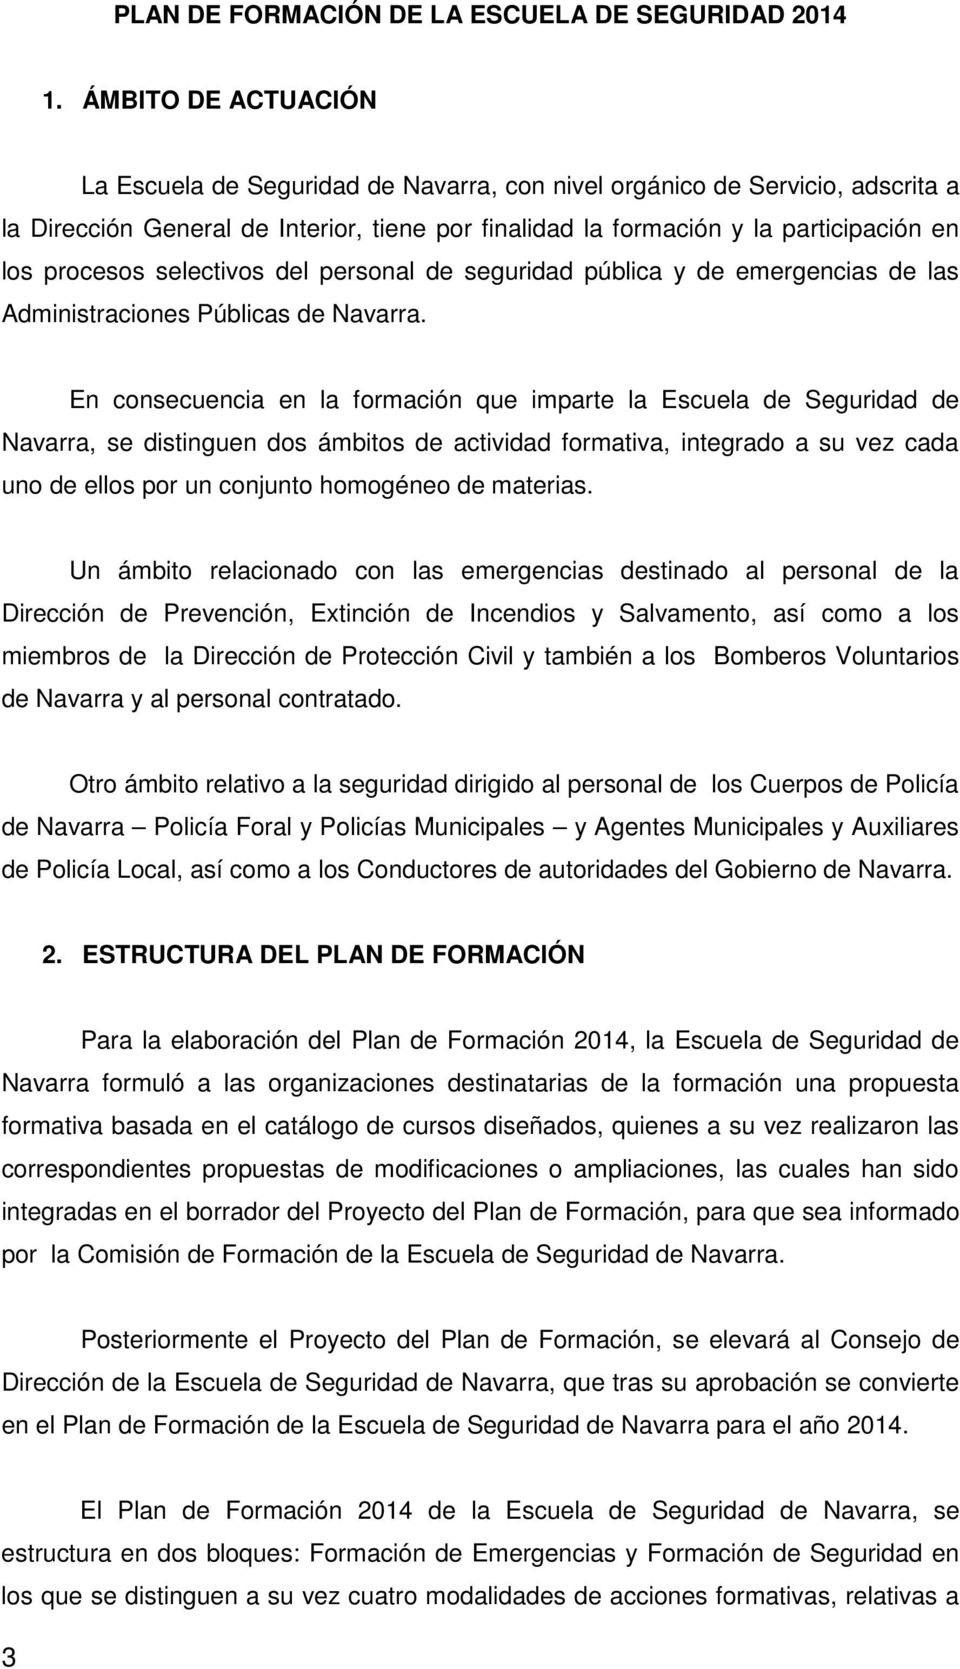 procesos selectivos del personal de seguridad pública y de emergencias de las Administraciones Públicas de Navarra.